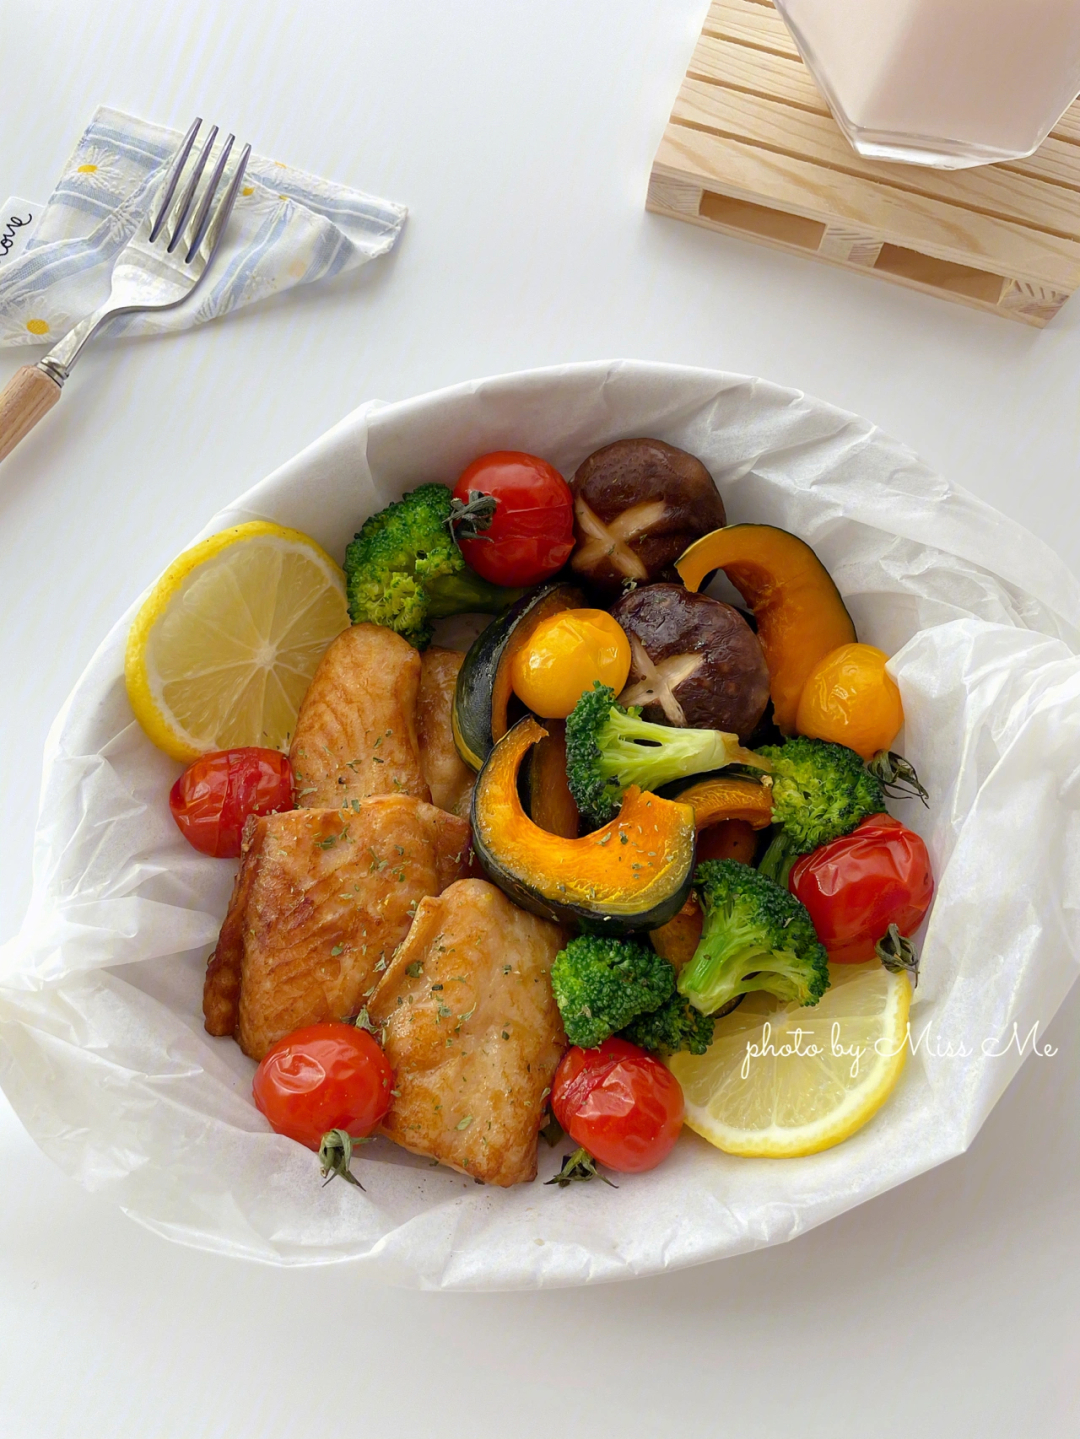 利鱼烤时蔬,龙利鱼进行简单的腌制之后和蔬菜一起放进烤箱烤一烤就ok